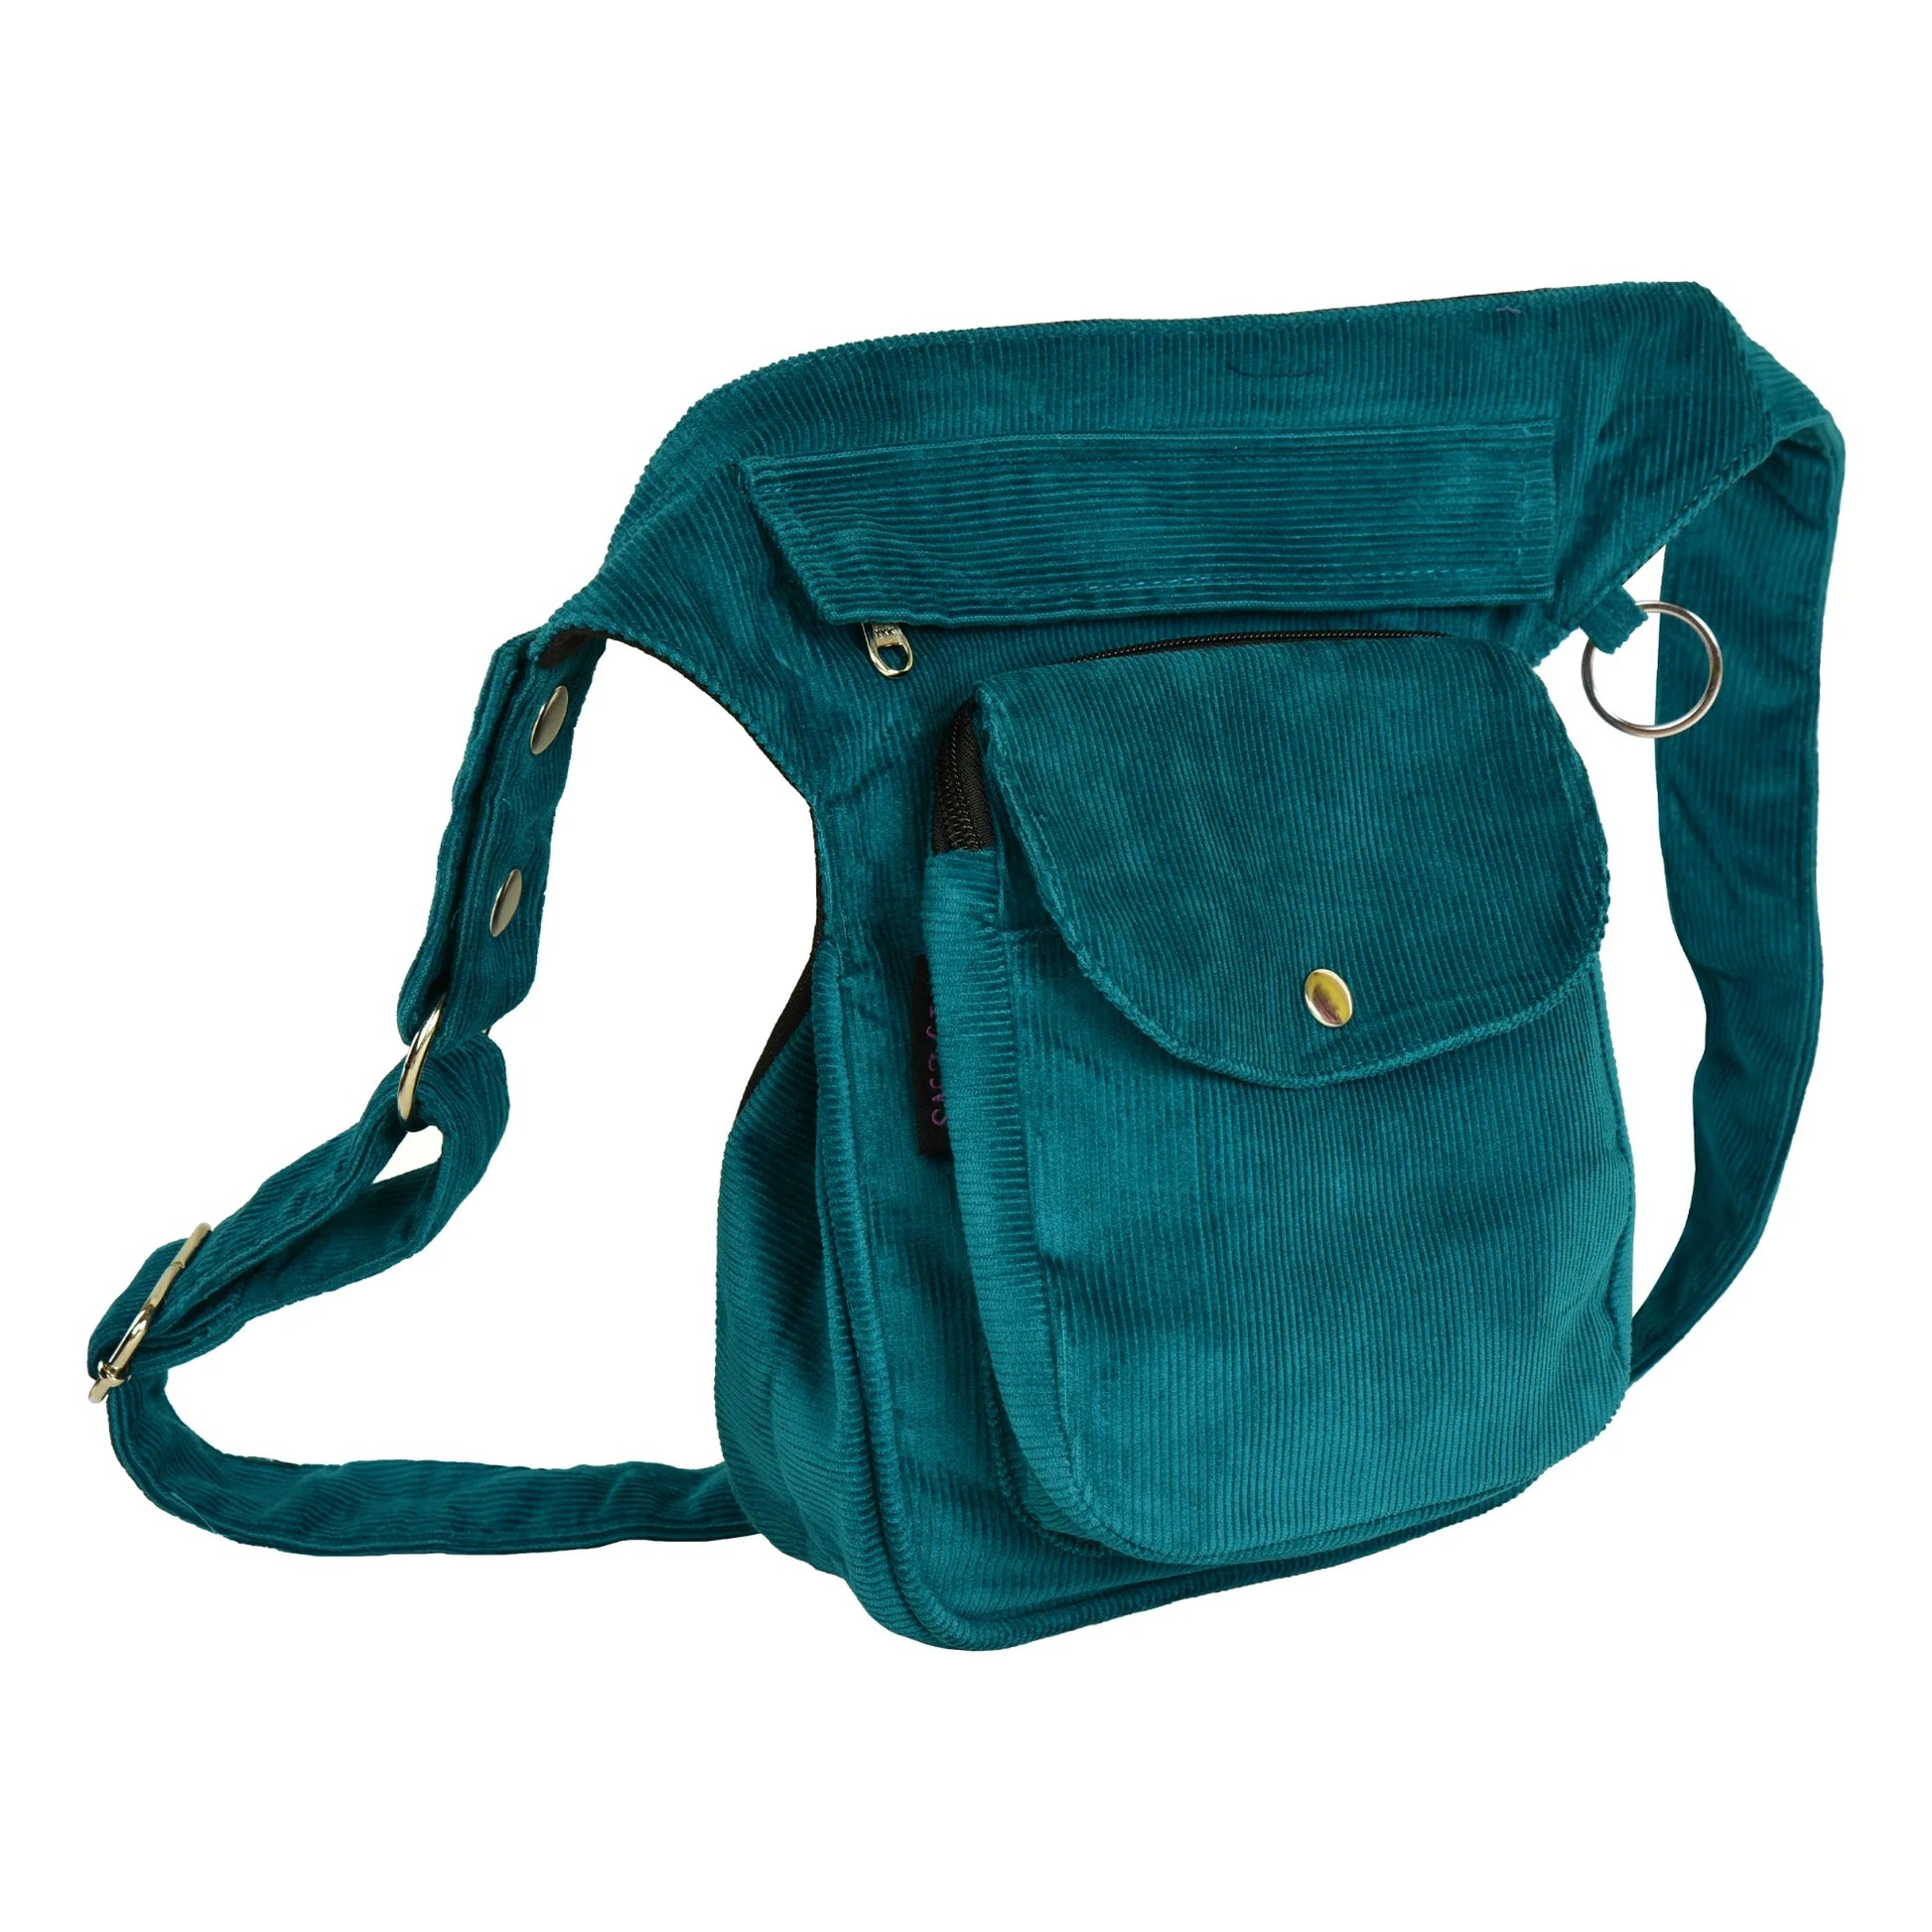 Gürteltasche, Gassi-Tasche aus Cord Seegrün. Diese Tasche verfügt über einen Leckerli Fach mit wasserabweisenden und waschbarem Innenfutter.